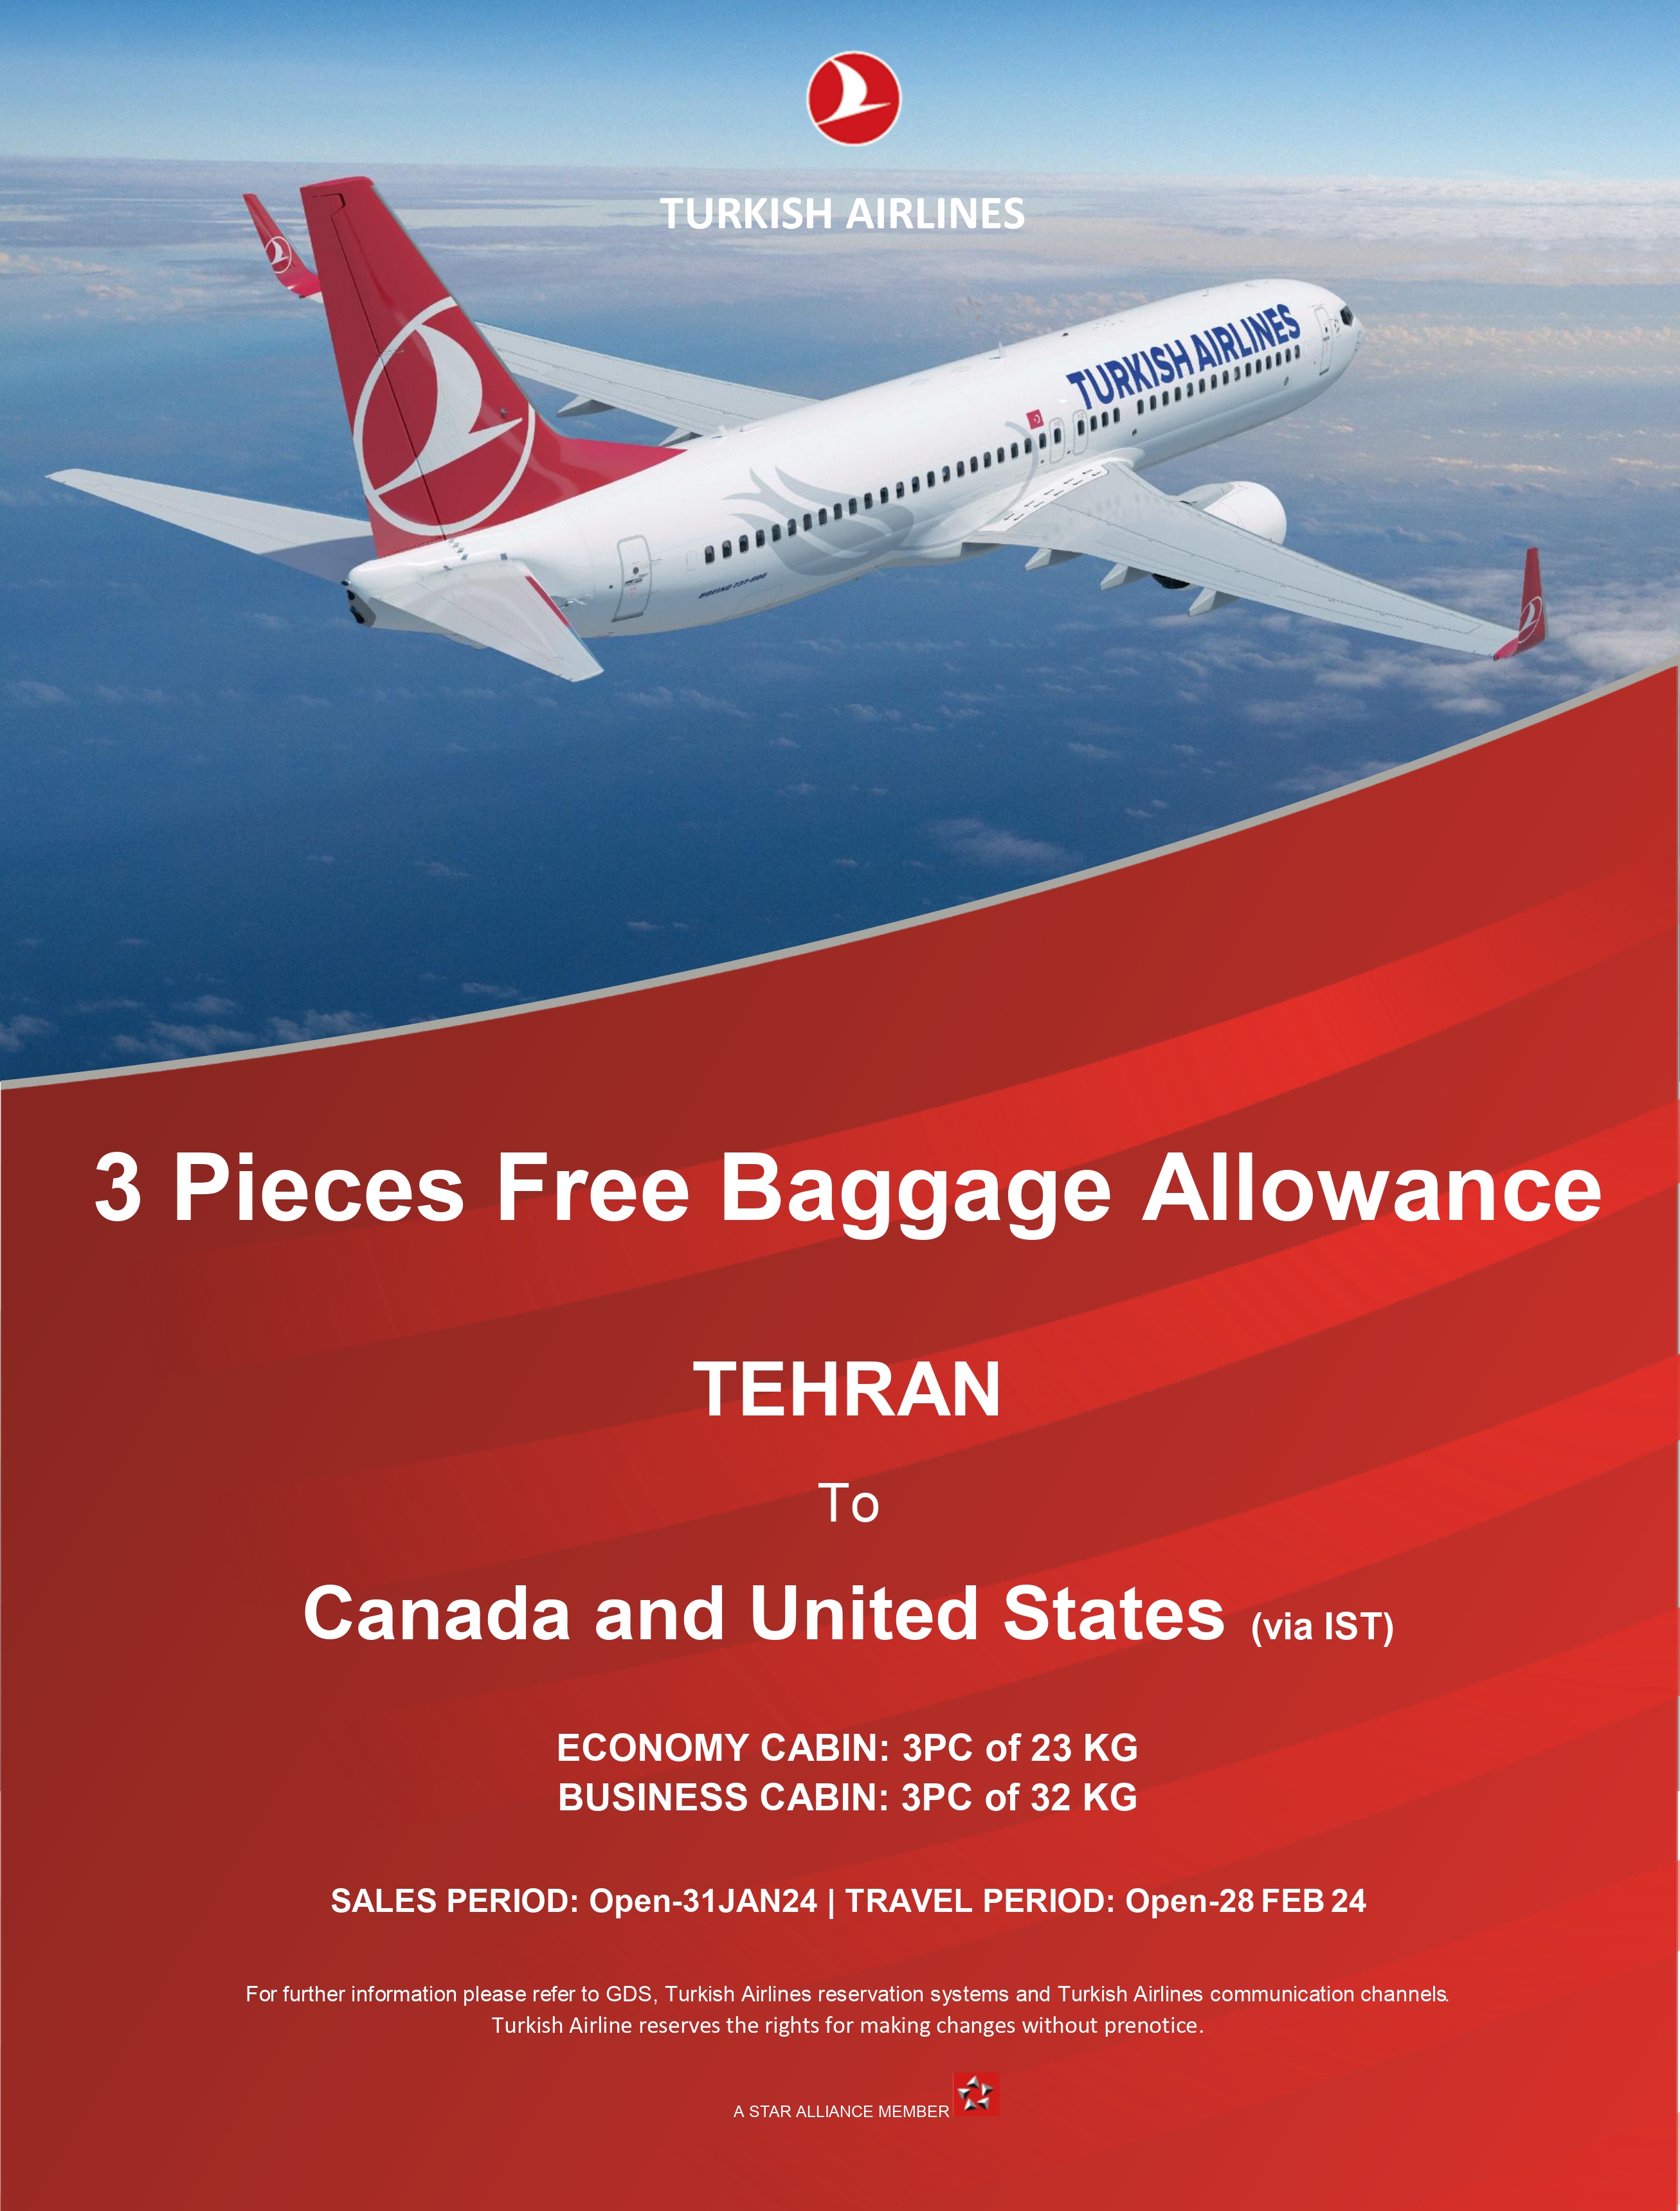 بخشنامه و اطلاعیه   هواپیمایی ترکیش درباره اضافه بار رایگان در مسیر آمریکا و کانادا